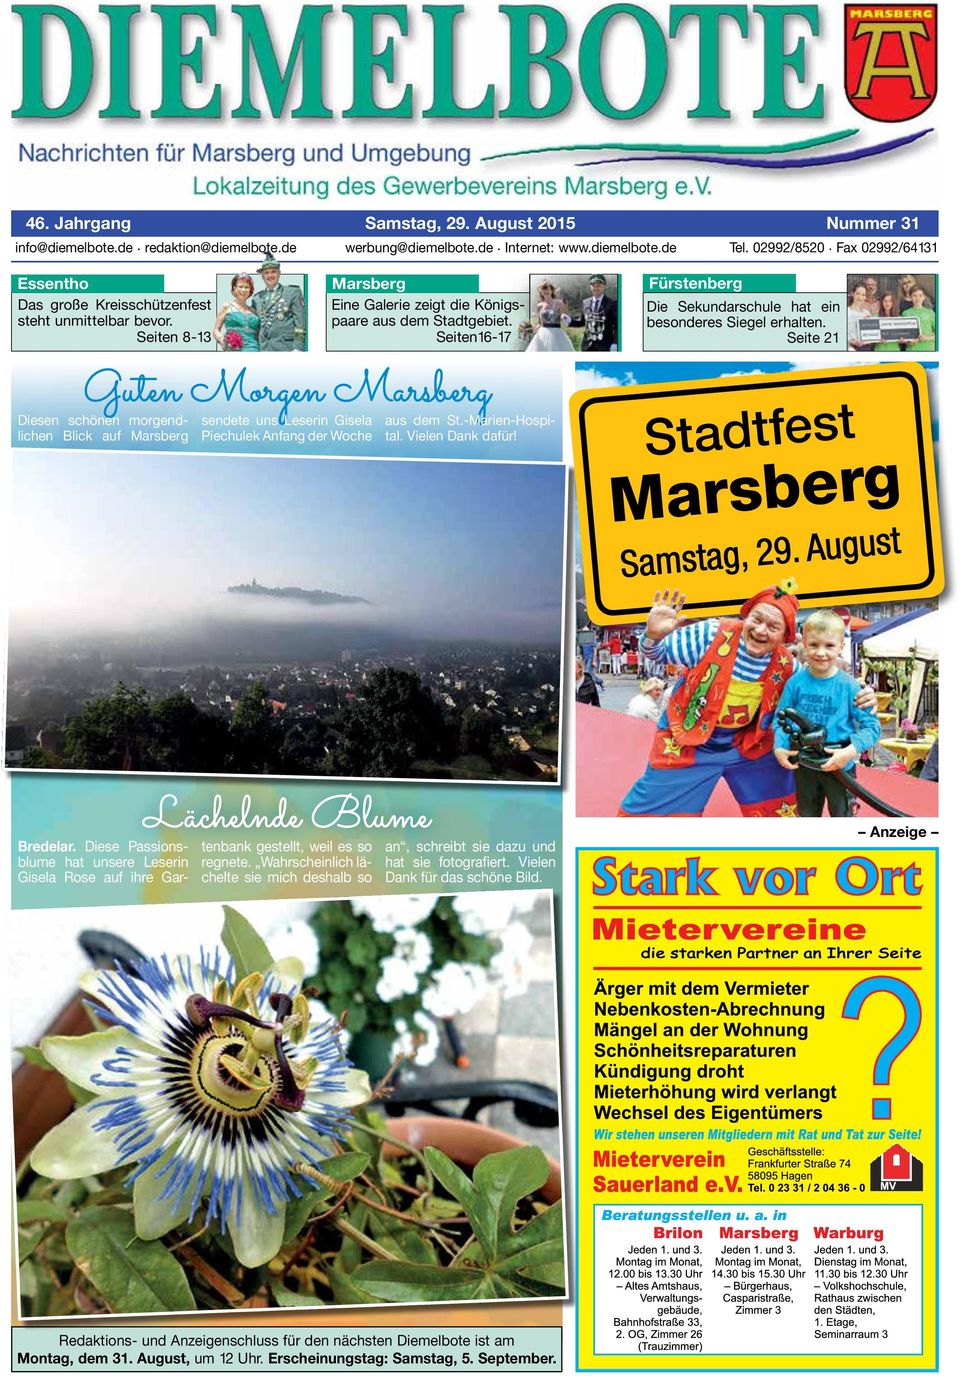 Seiten16-17 Guten Morgen Marsberg Diesen schönen morgendlichen Blick auf Marsberg sendete uns Leserin Gisela Piechulek Anfang der Woche aus dem St.-Marien-ospital. Vielen Dank dafür!